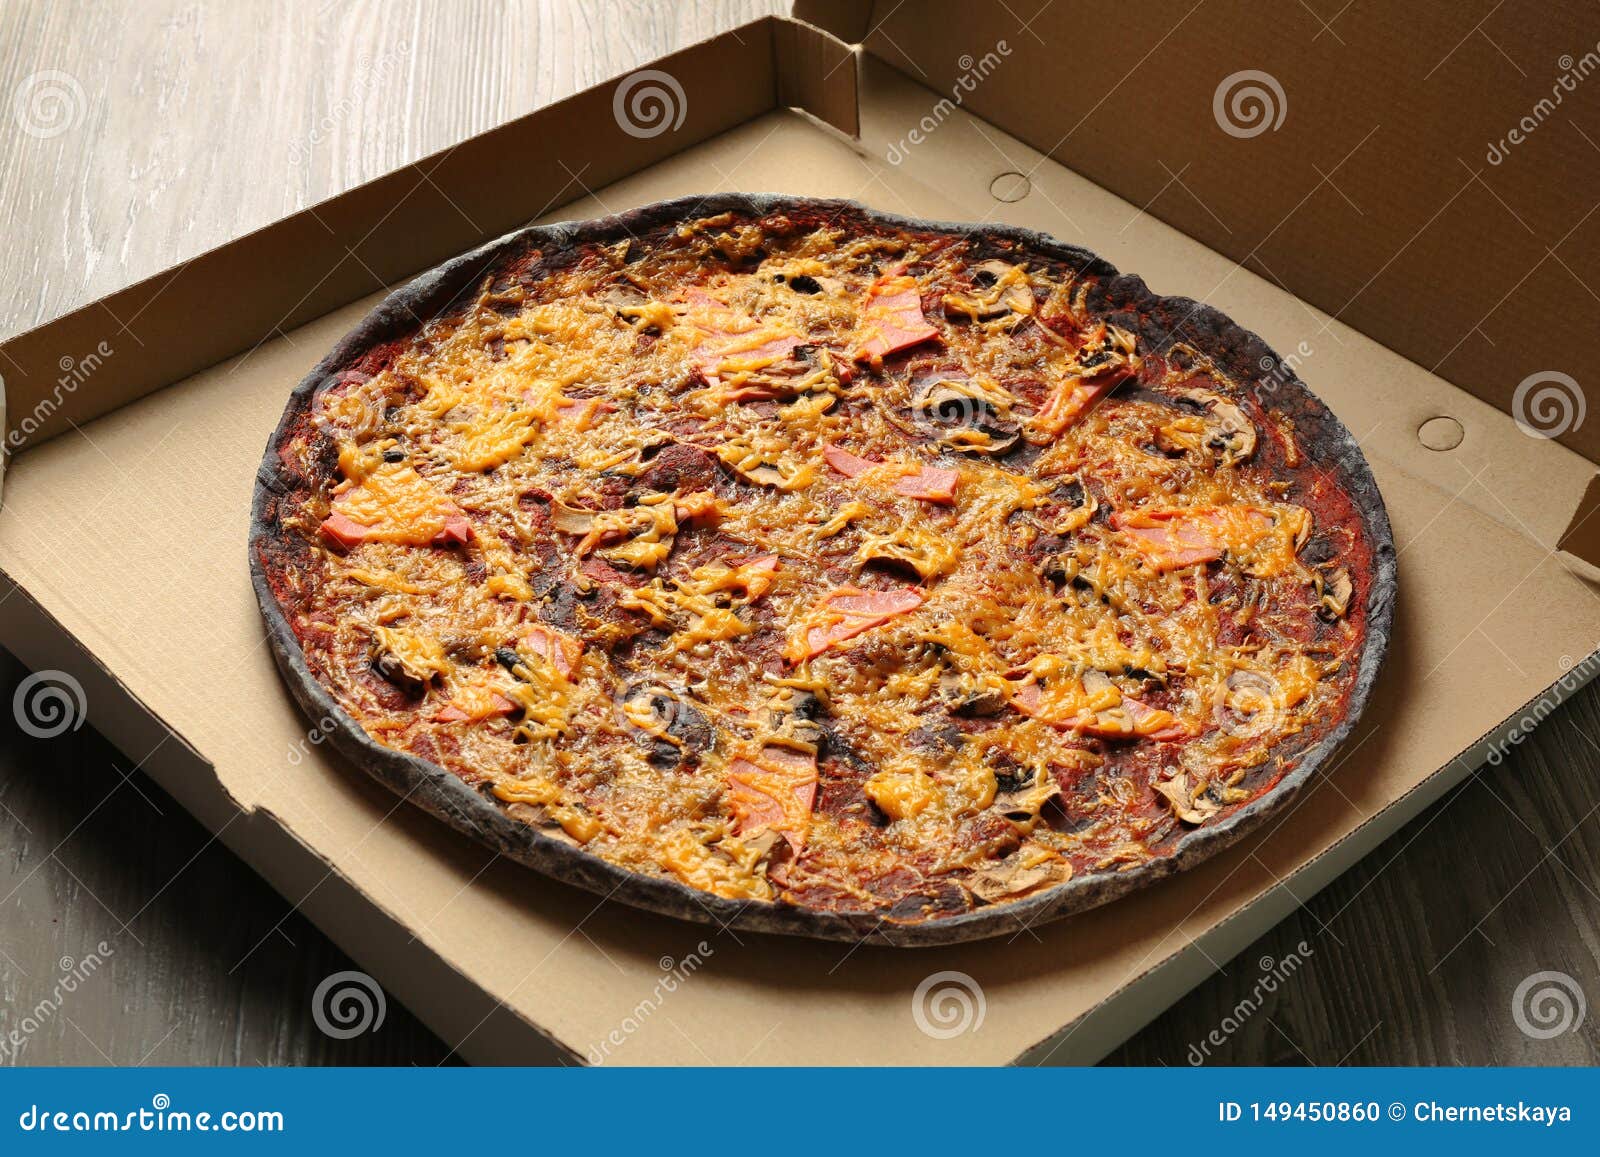 пицца черное тесто фото 34